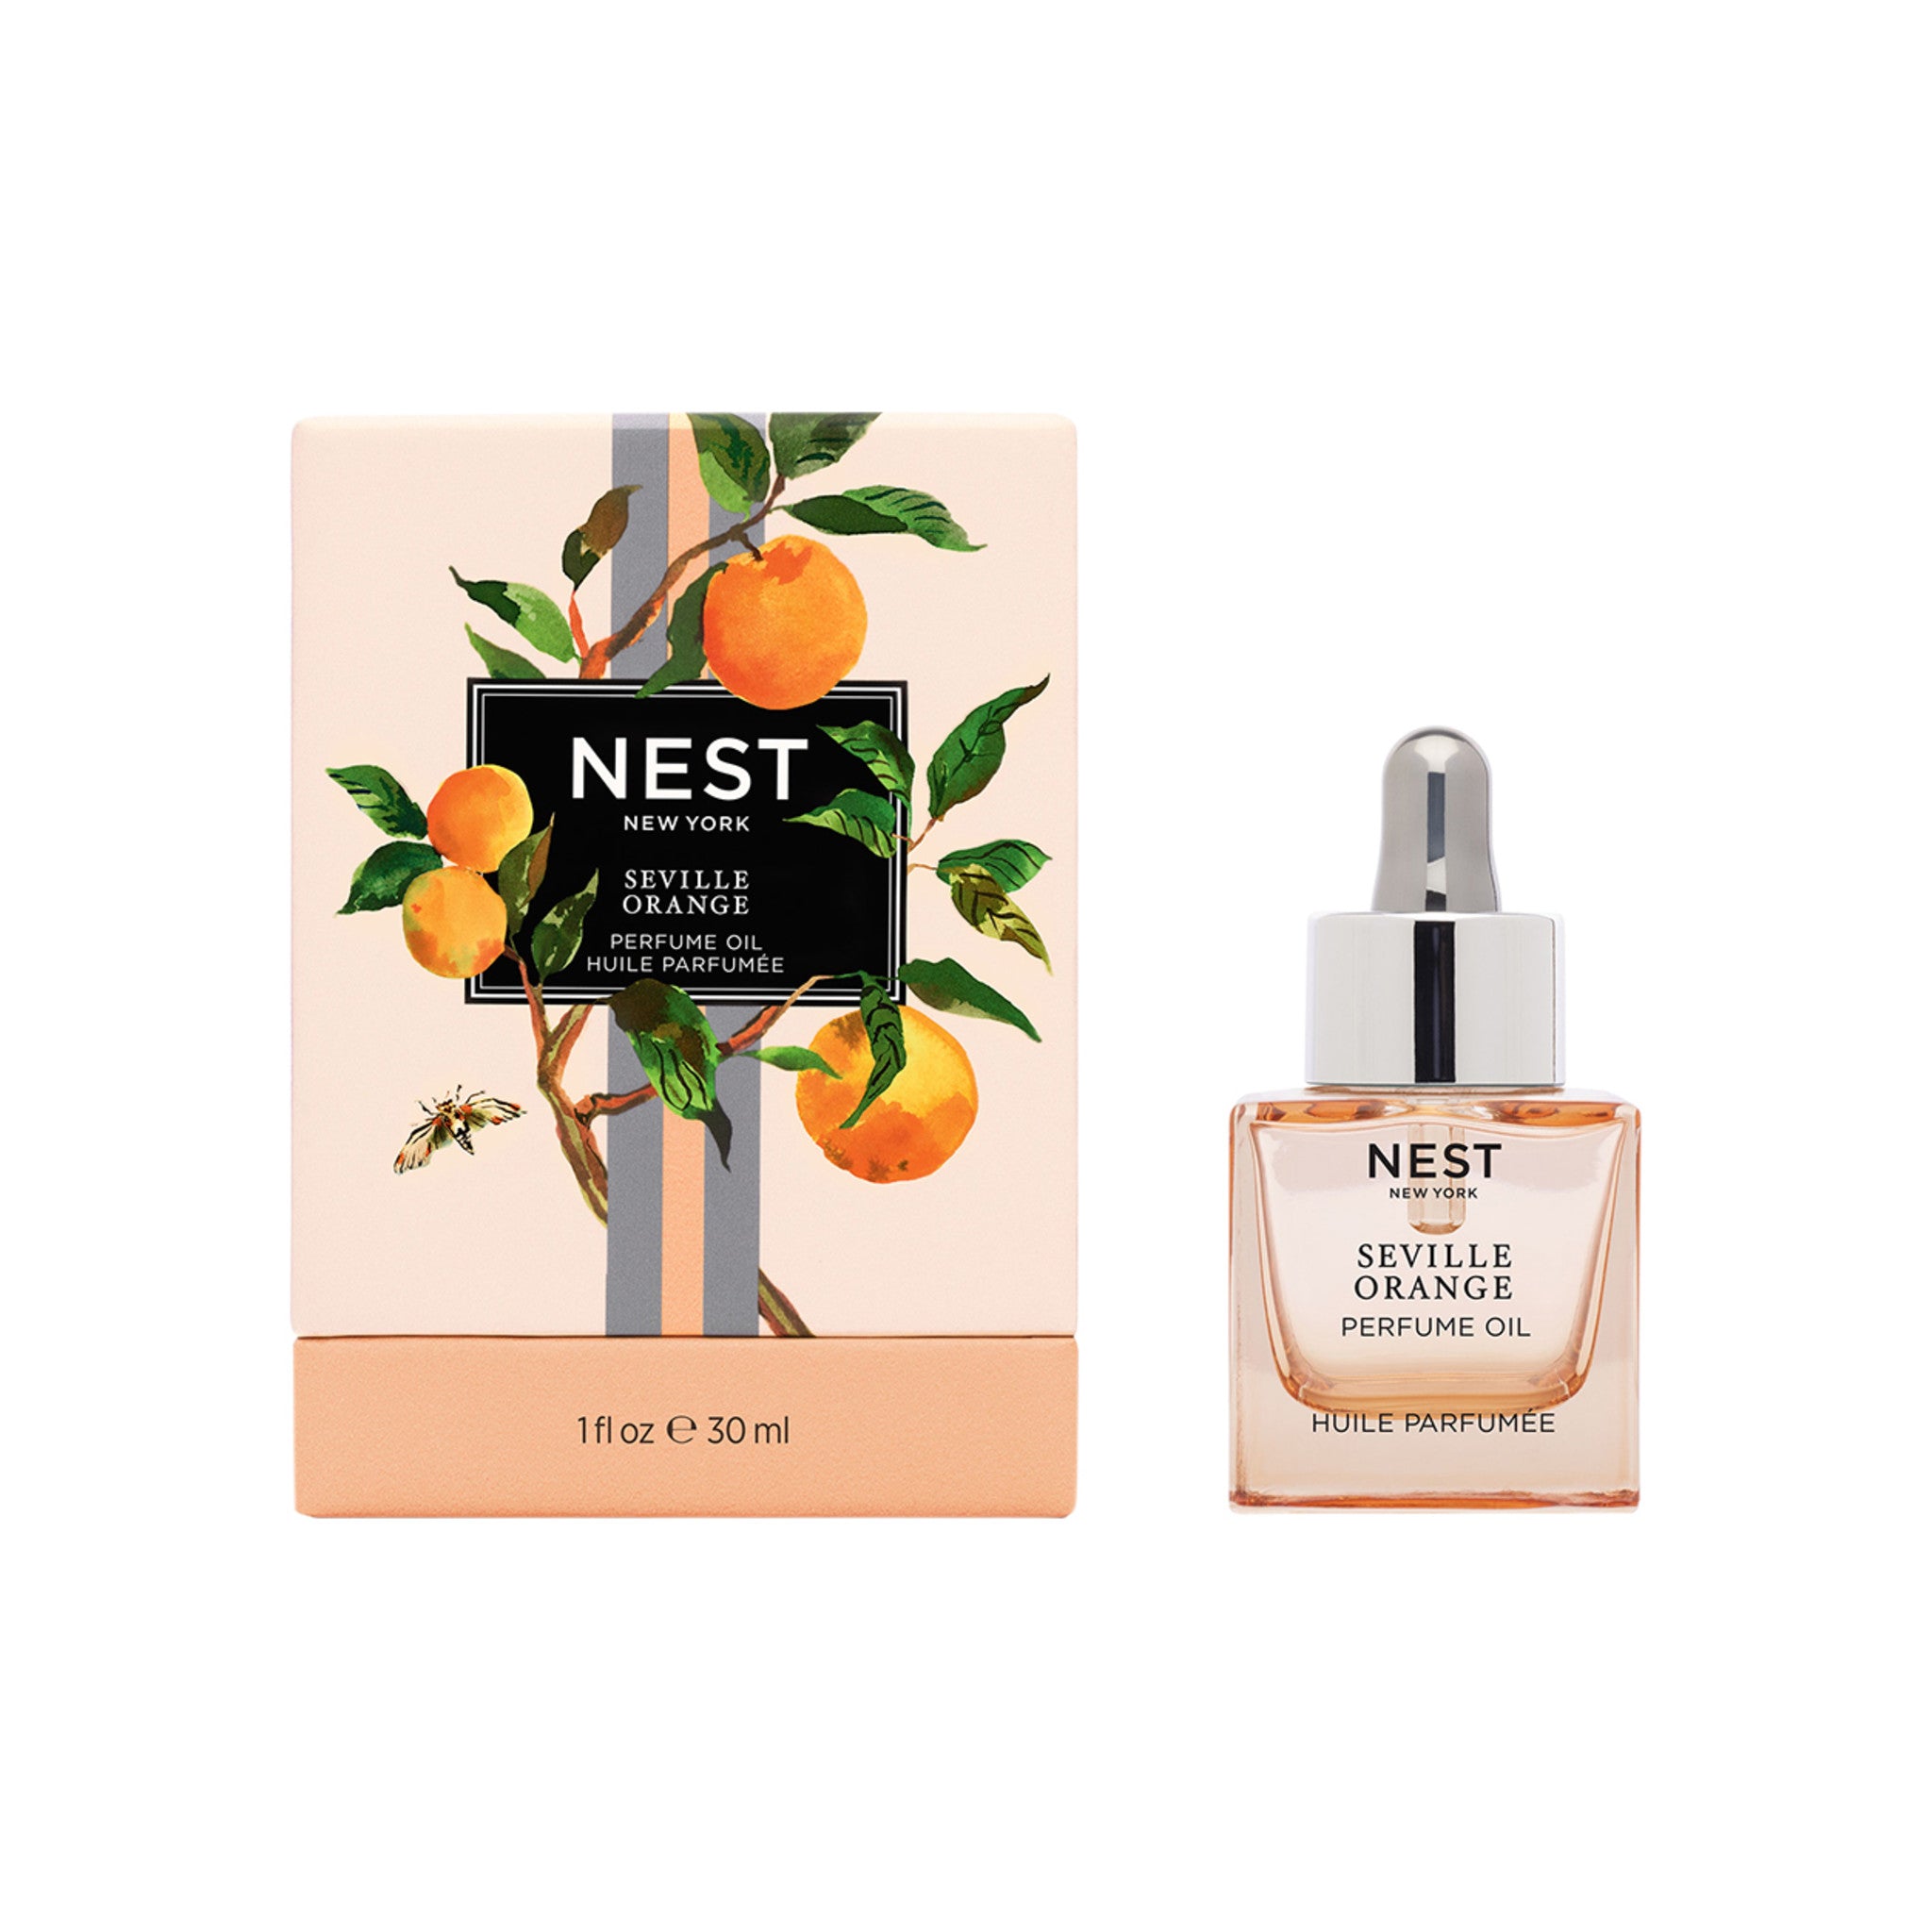 Nest Seville Orange Perfume Oil Size variant: 30 ml main image.